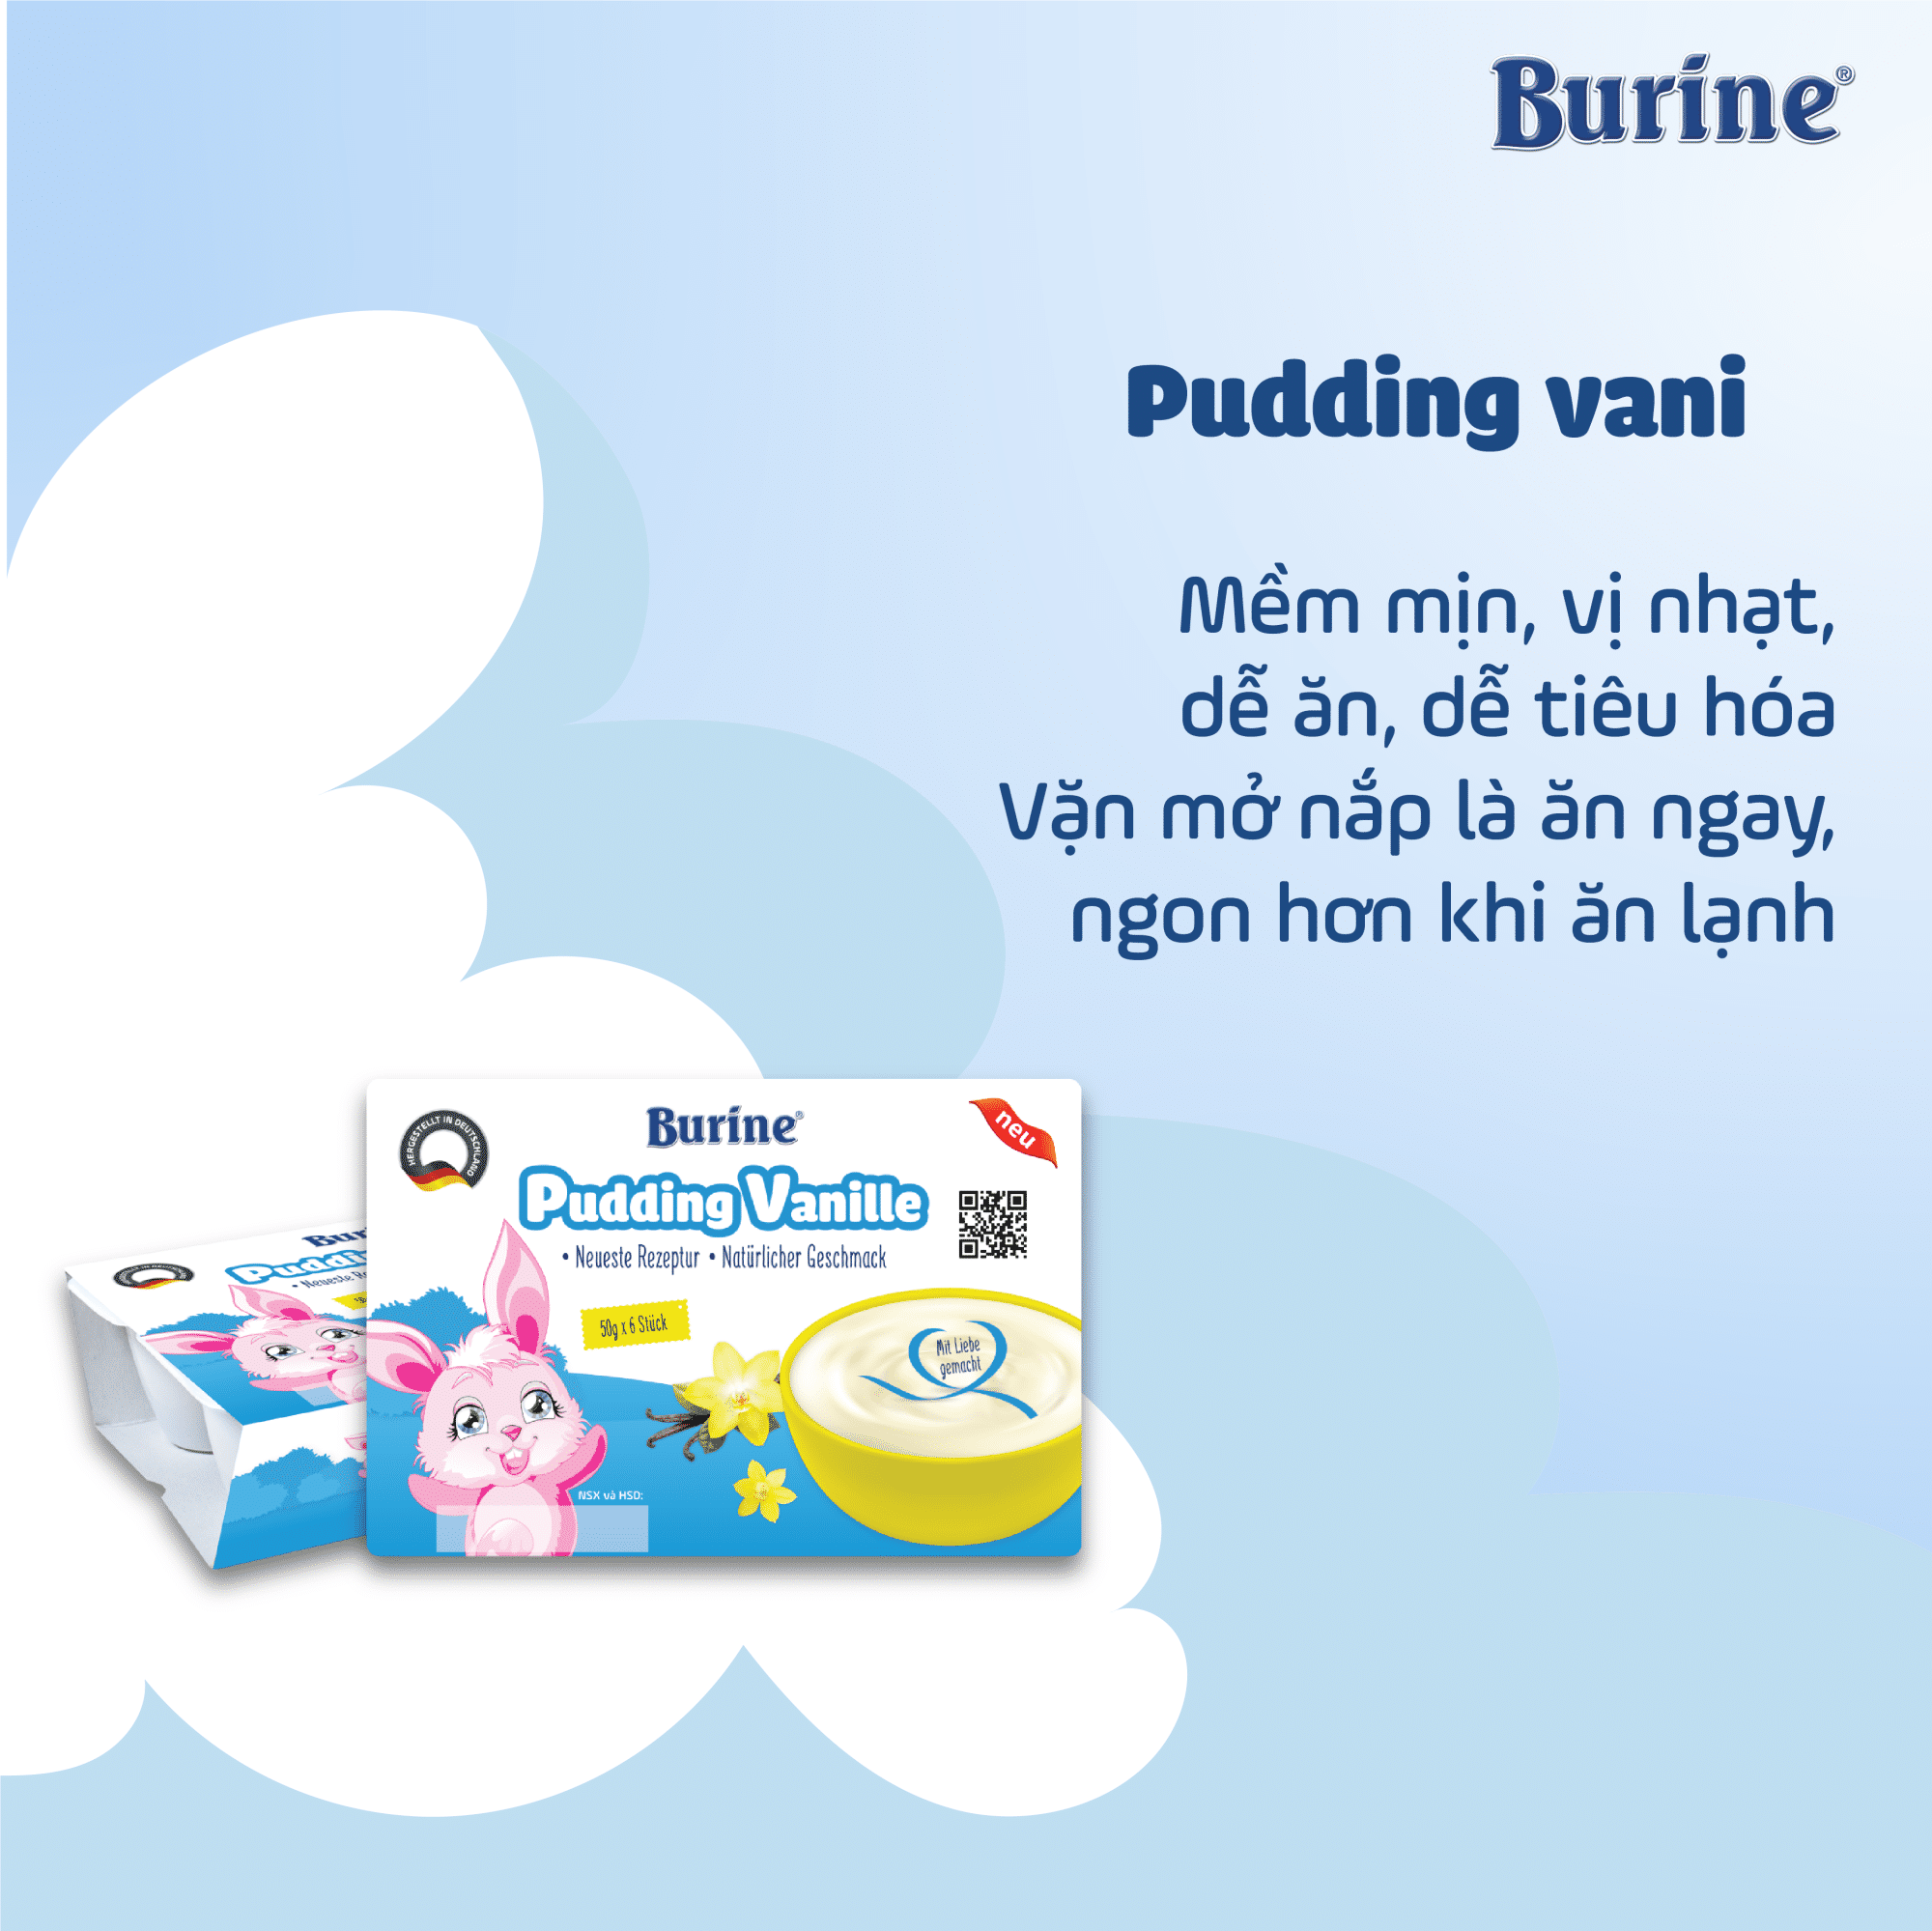 Review Sản Phẩm Pudding Vani Burine Từ Các Mẹ - BURINE